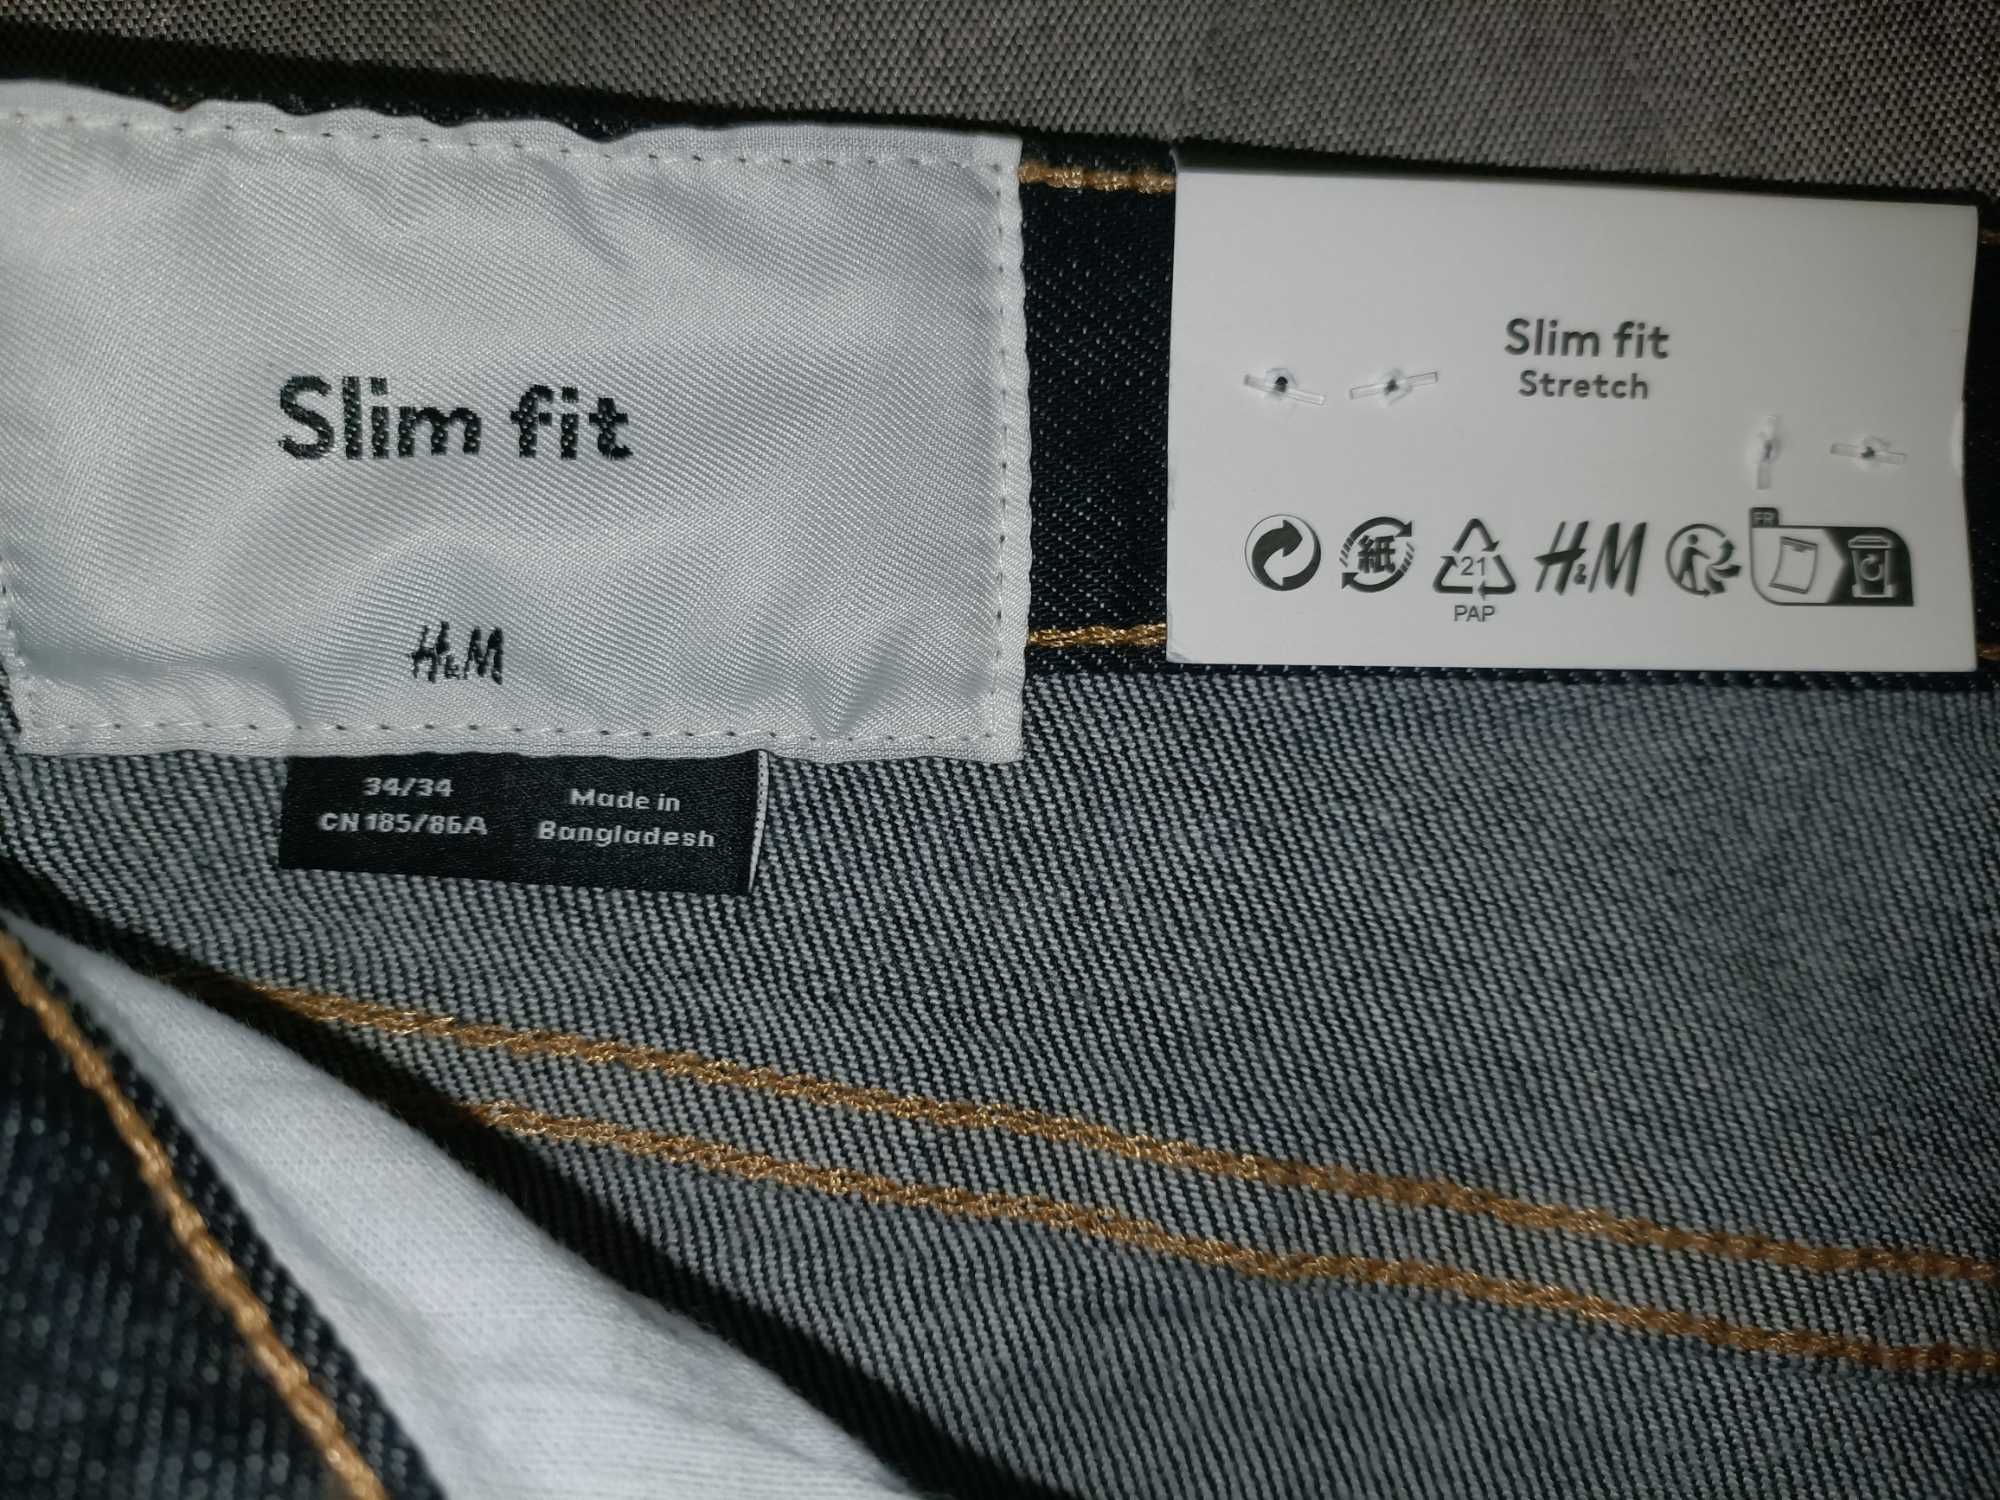 Spodnie męskie-Slim Jeans H&M, rozmiar 34/34, ciemnoniebieskie (nowe)